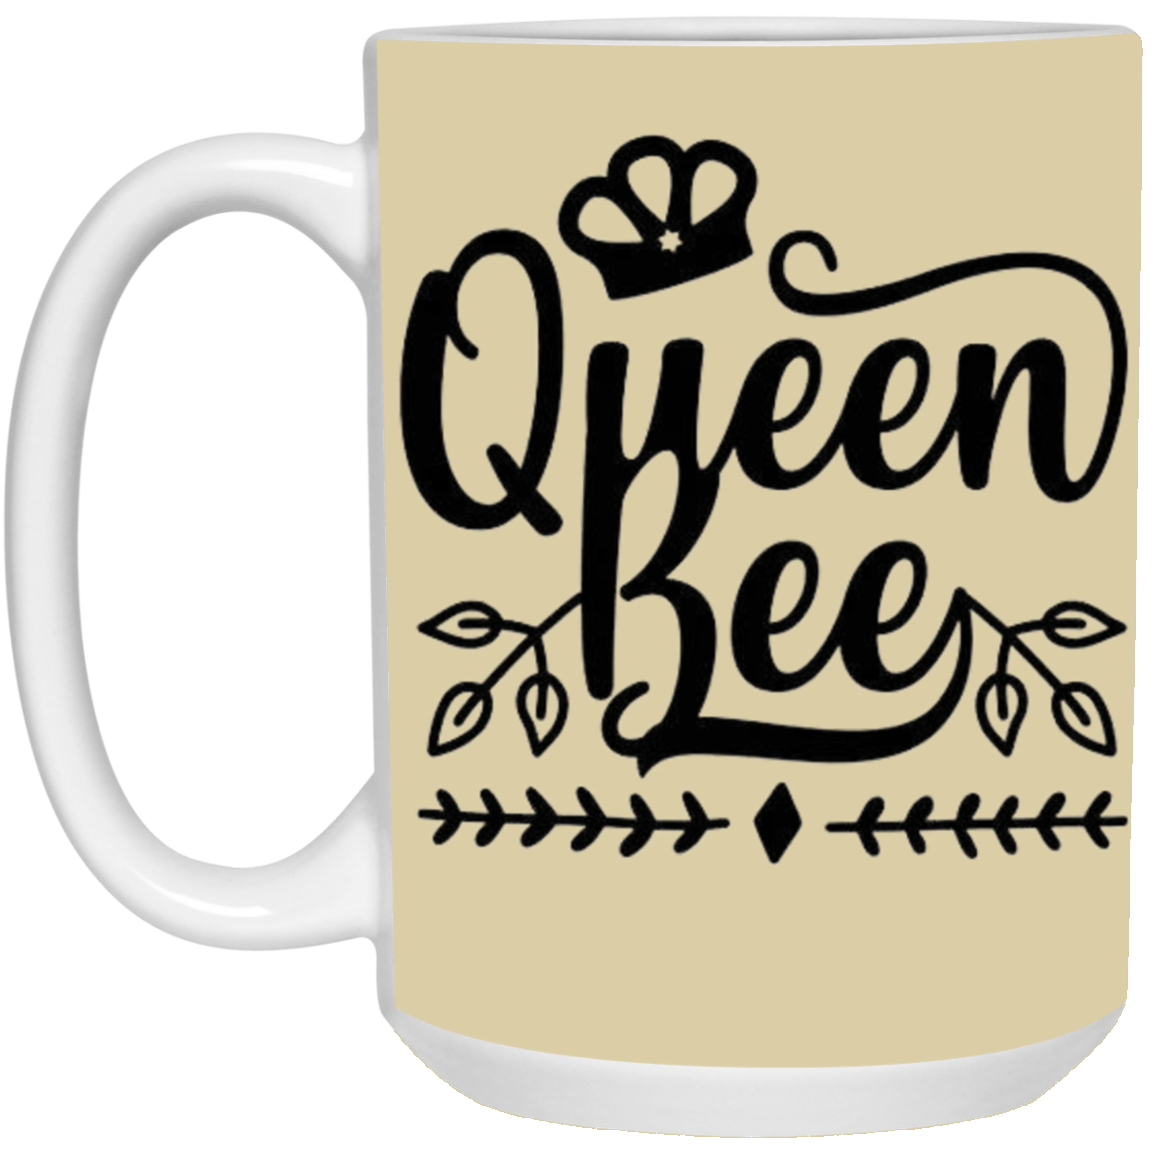 Queen Bee 15 oz. White Mug